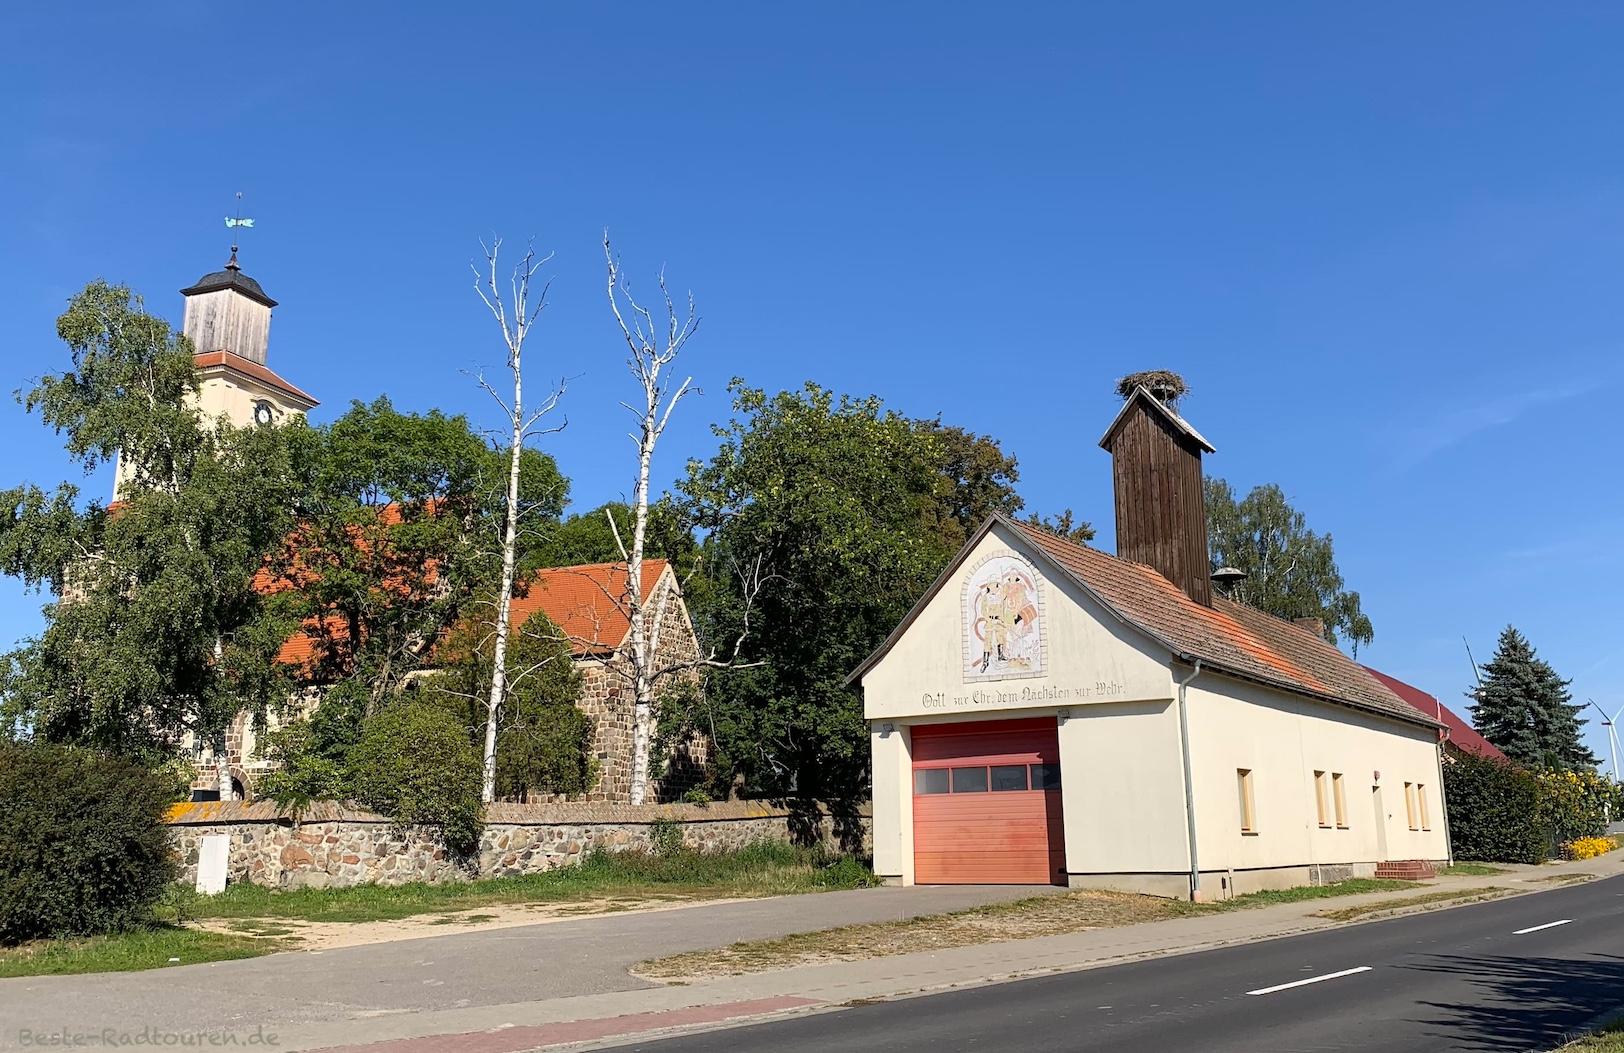 Foto vom Klostertour-Radweg aus: Kerkow (Angermünde), Feuerwehr und Kirche